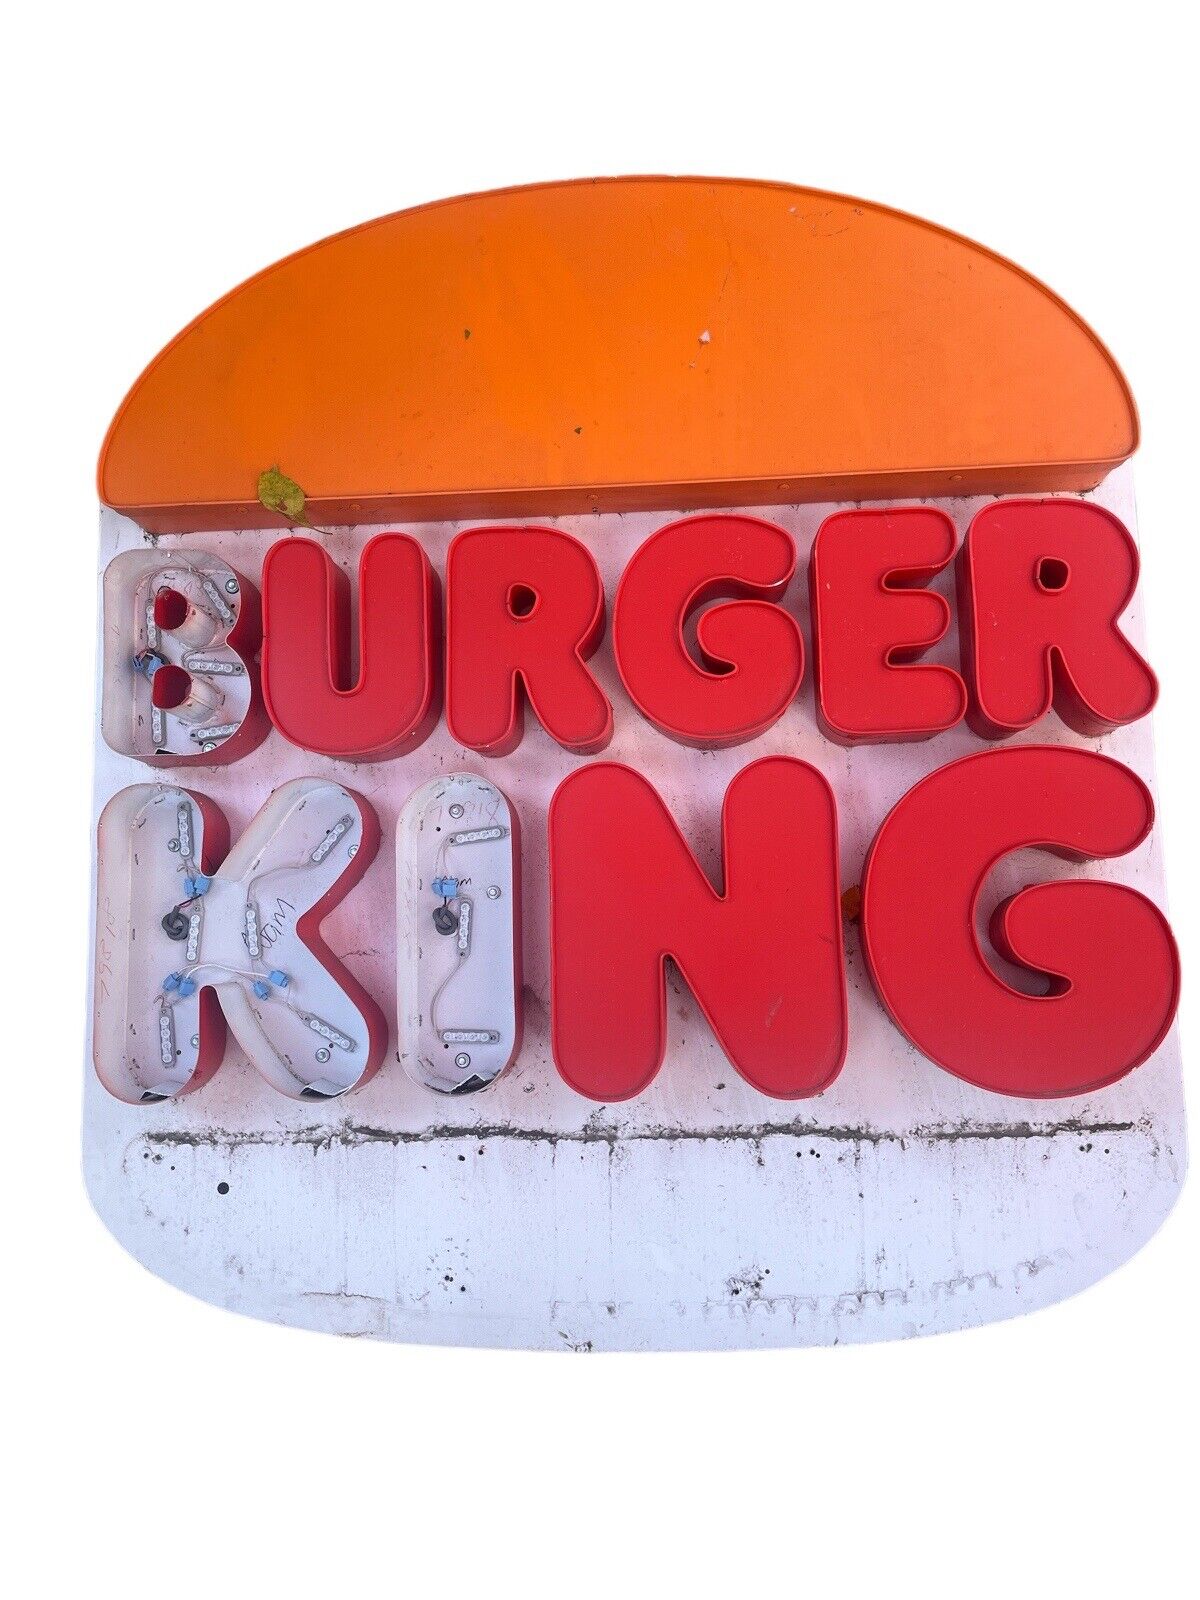 Burger King Vintage Sign  Huge With Lights